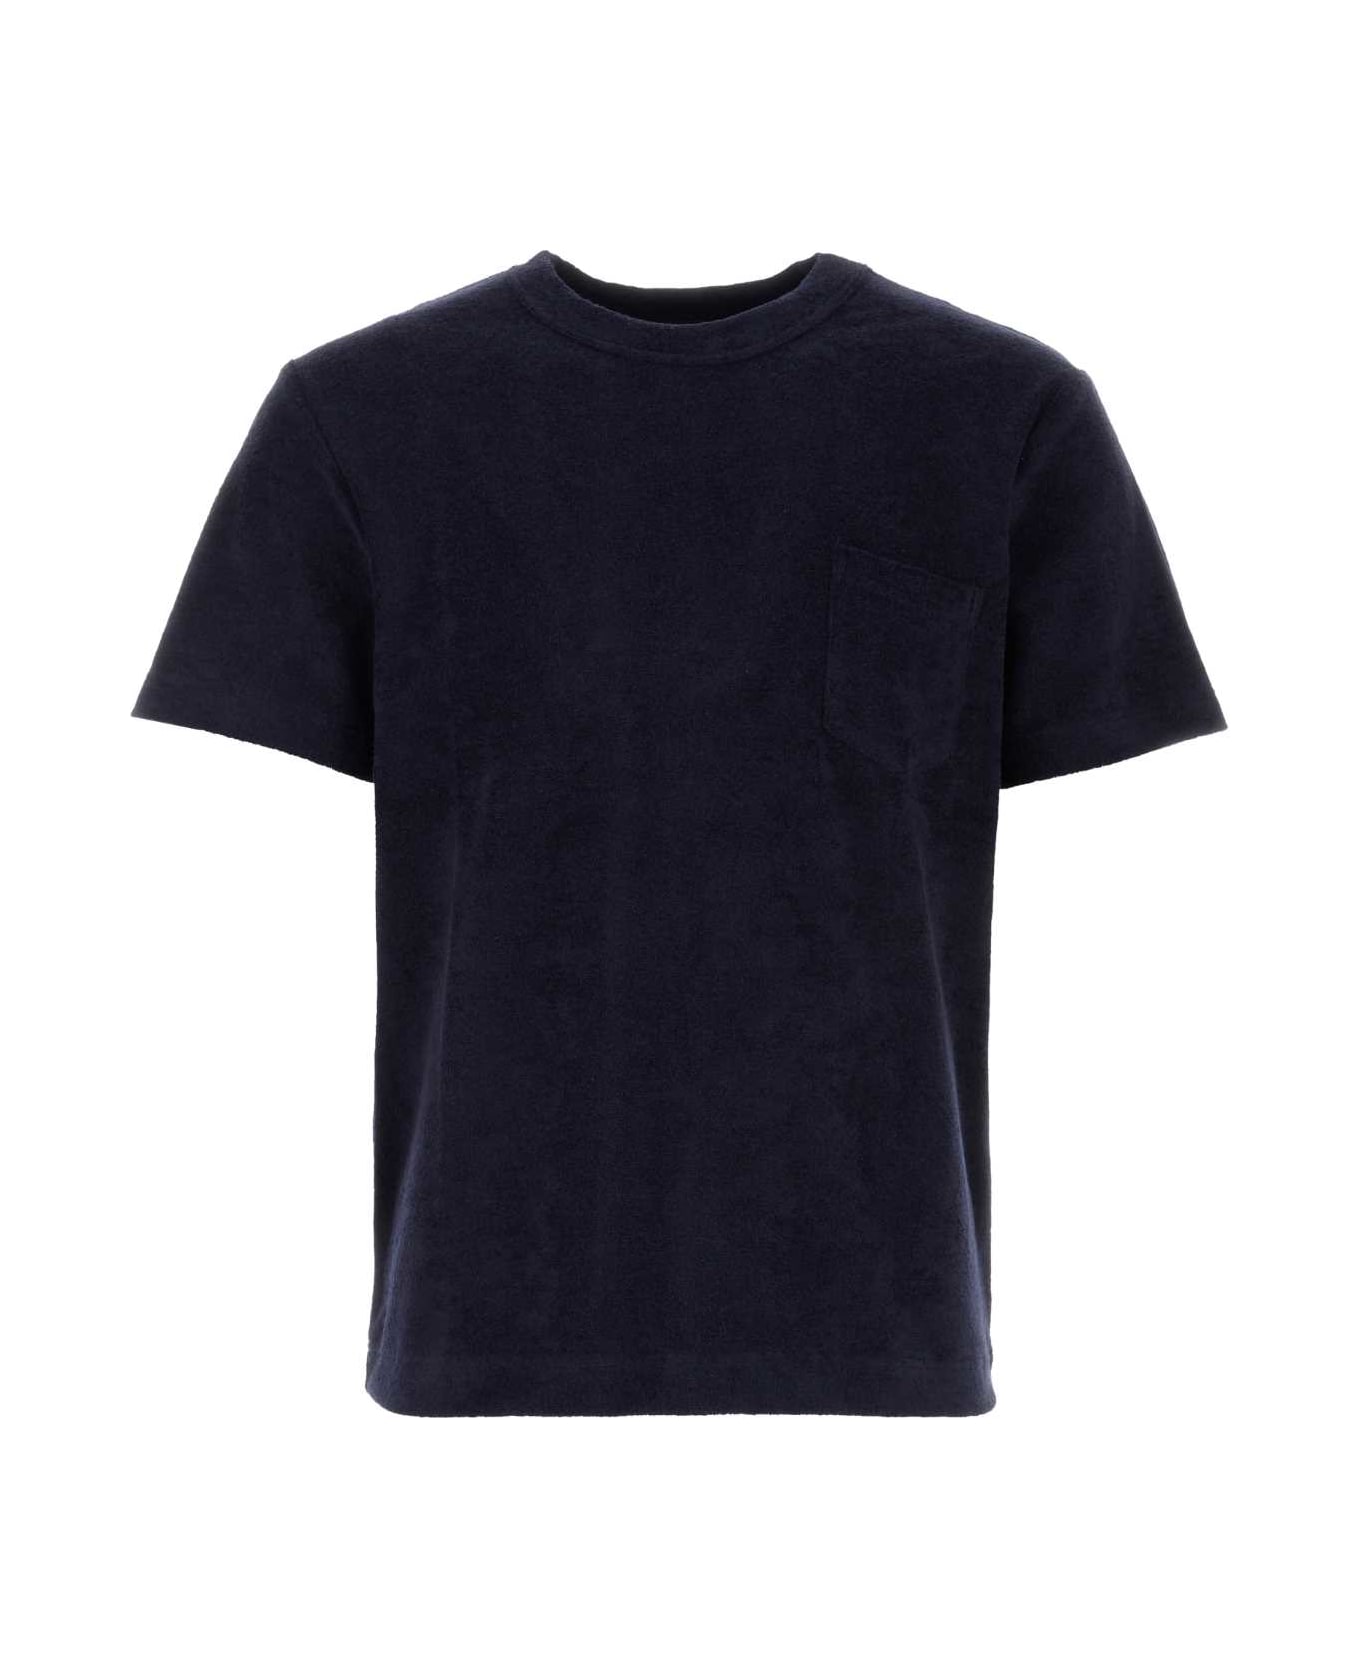 Howlin Navy Blue Terry Fons T-shirt - NAVY シャツ